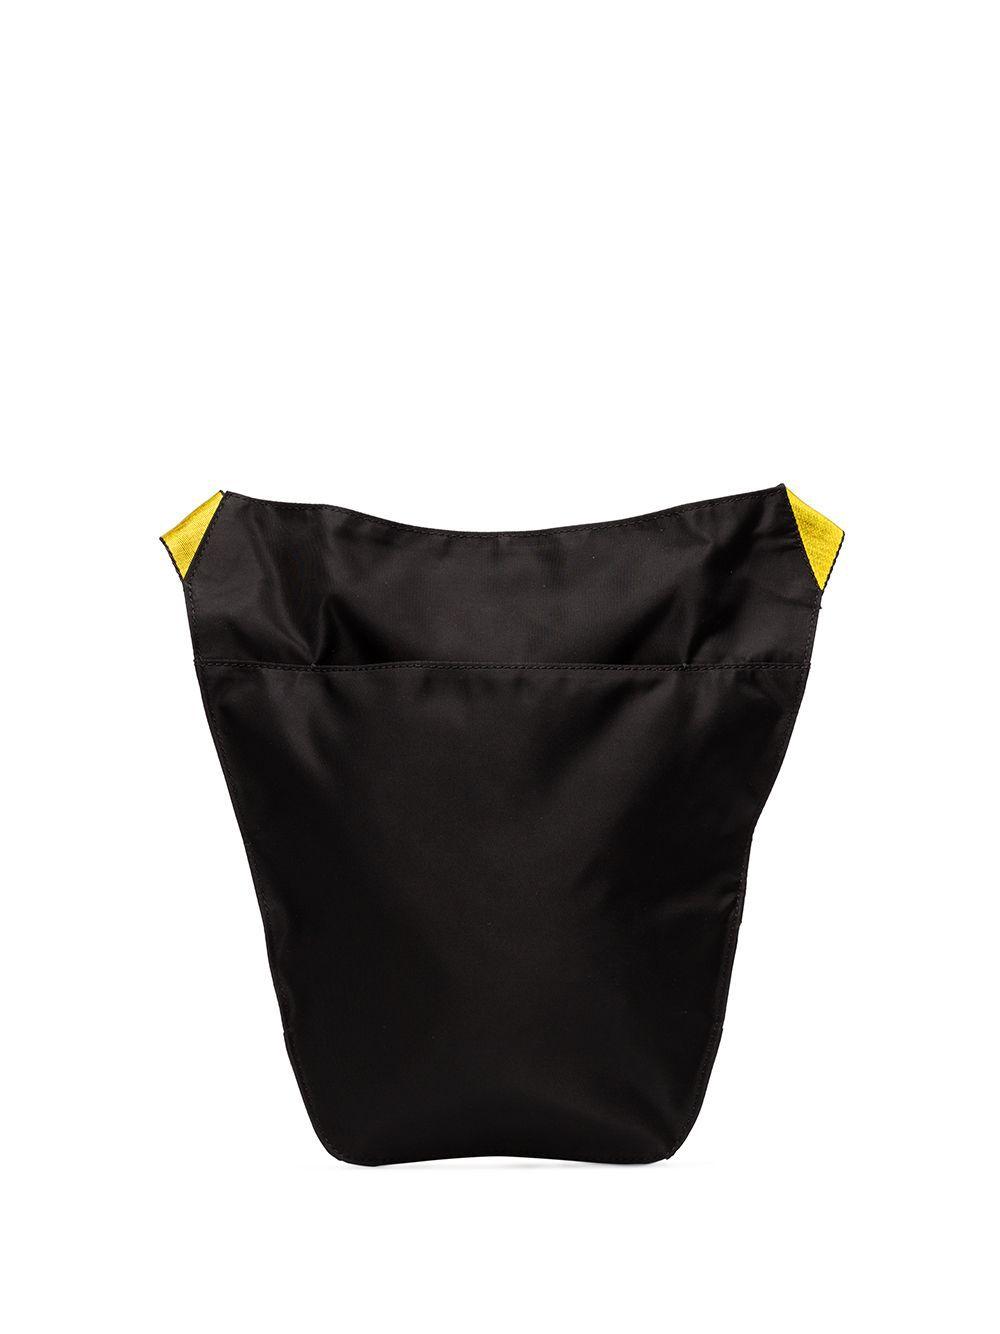 Off-White c/o Virgil Abloh Cotton Logo-strap Cross Body Bag in Black for Men - Lyst